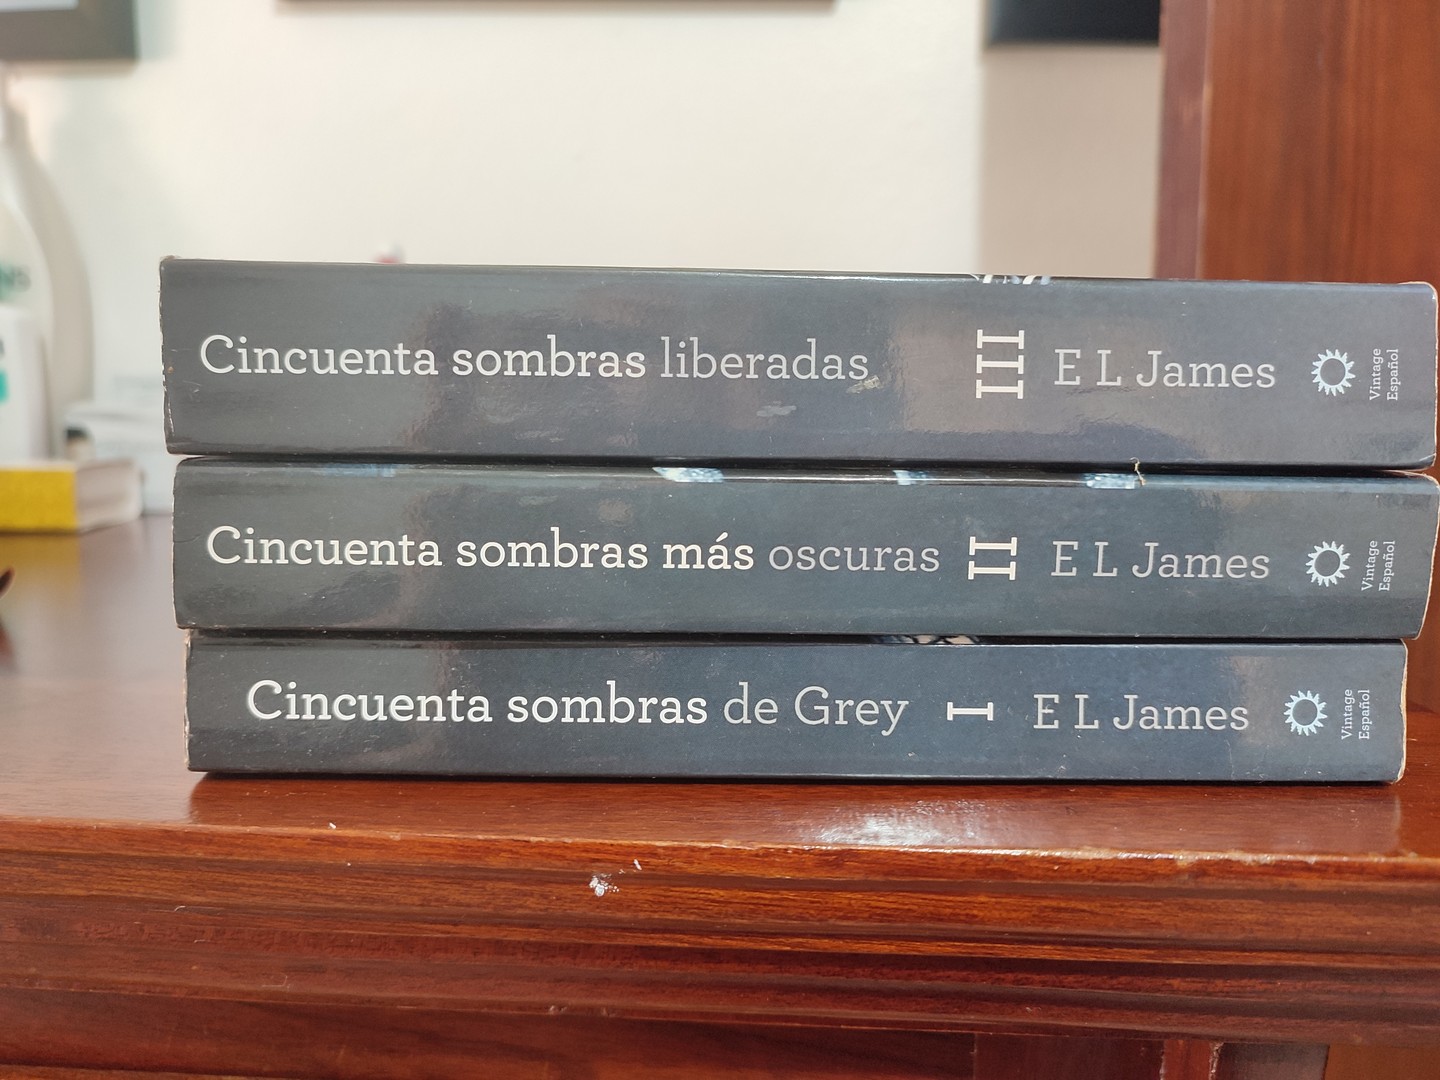 libros y revistas - Cincuentas Sombras: de Grey más oscuras y liberadas 1